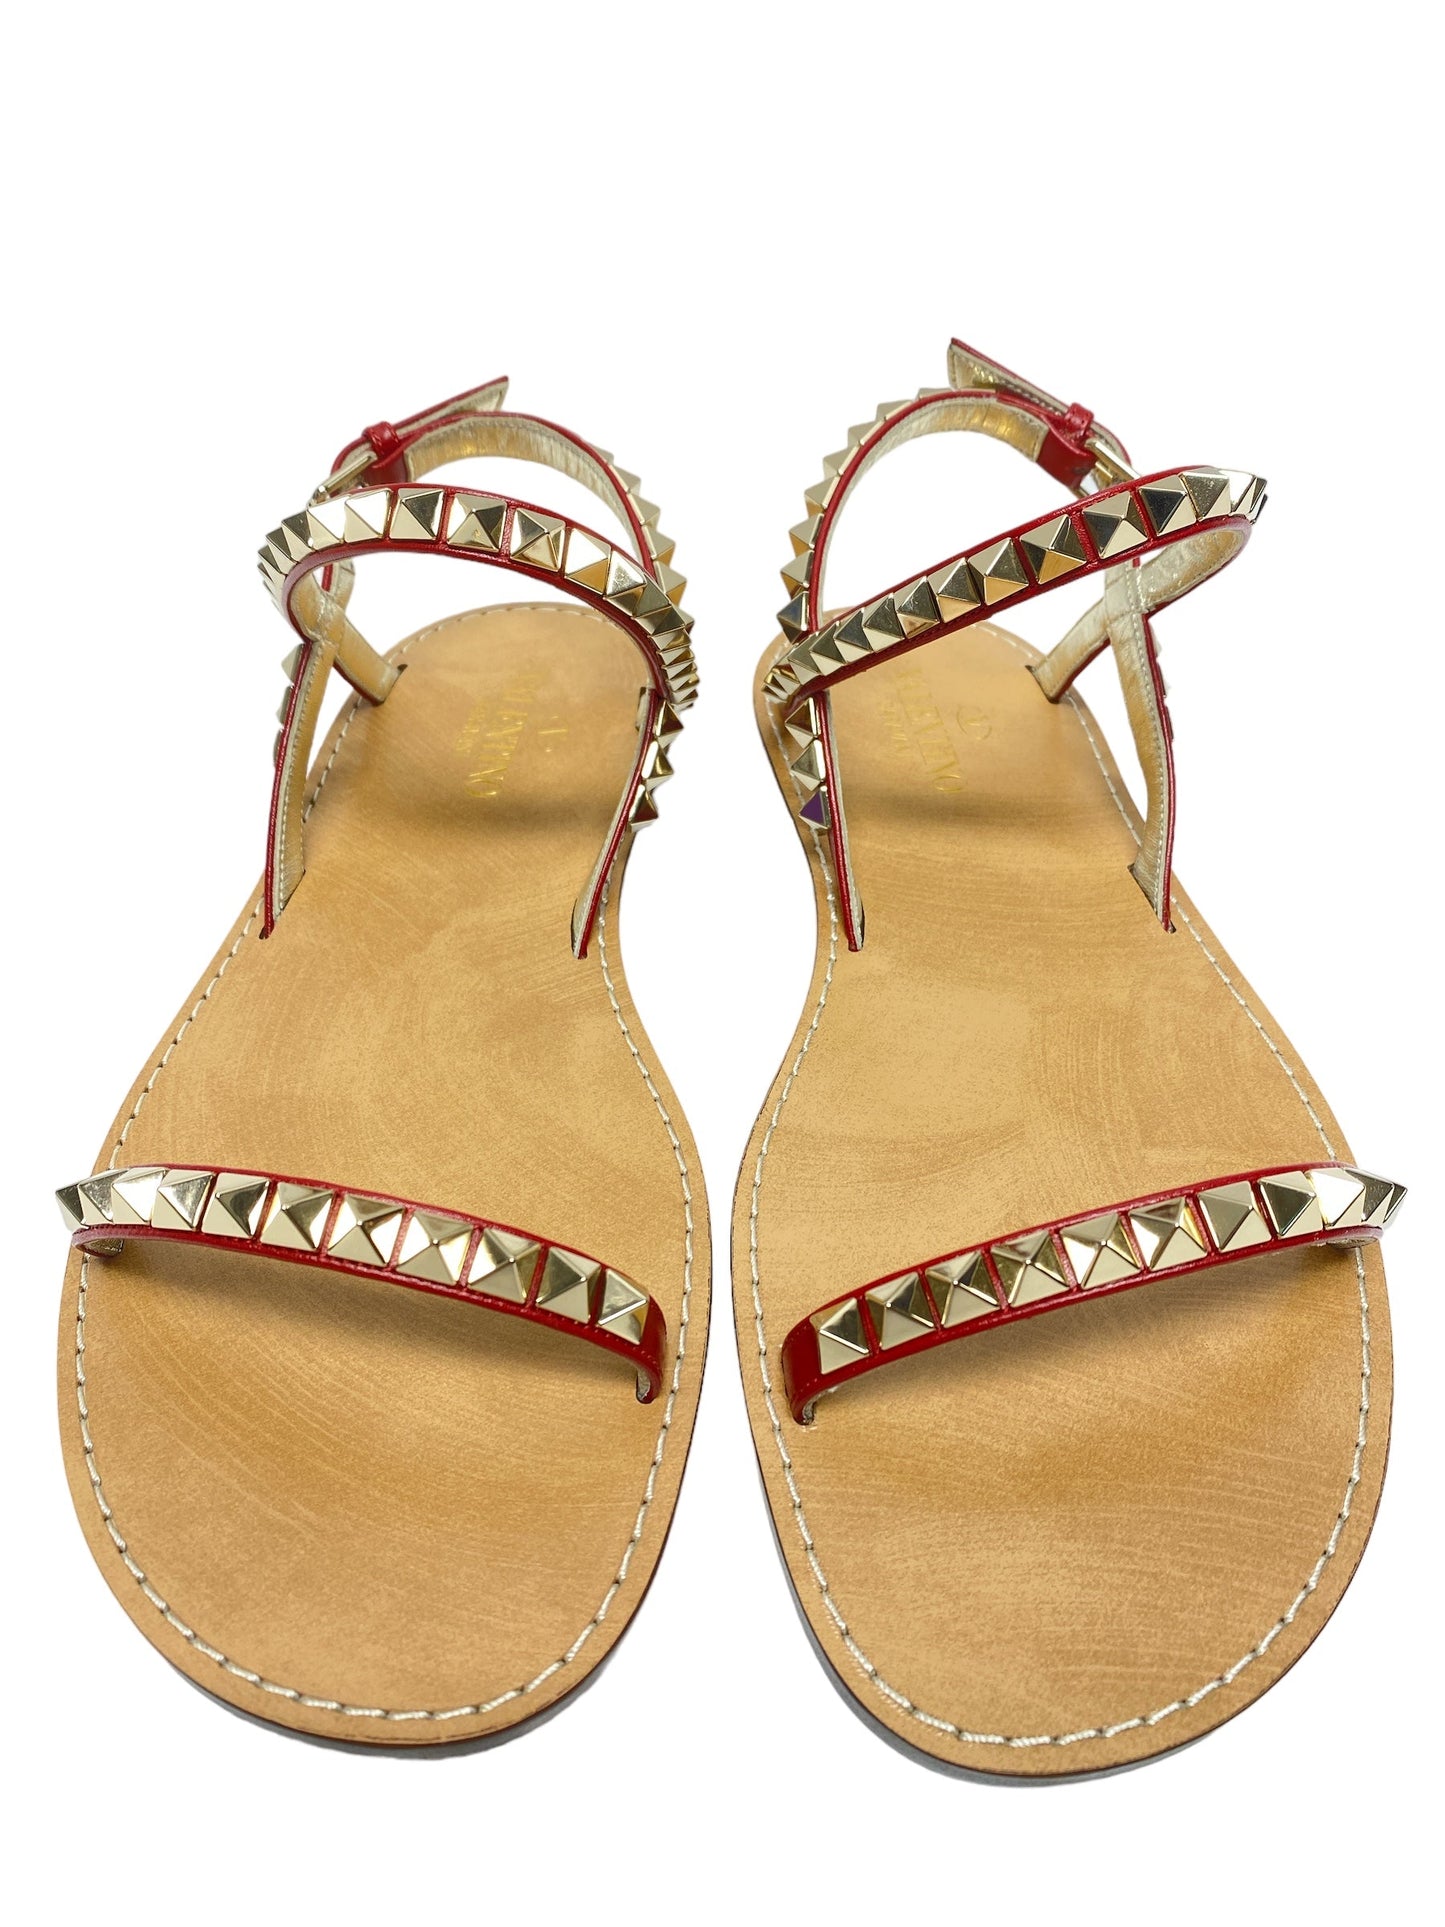 Sandals Luxury Designer By Valentino  Size: 6